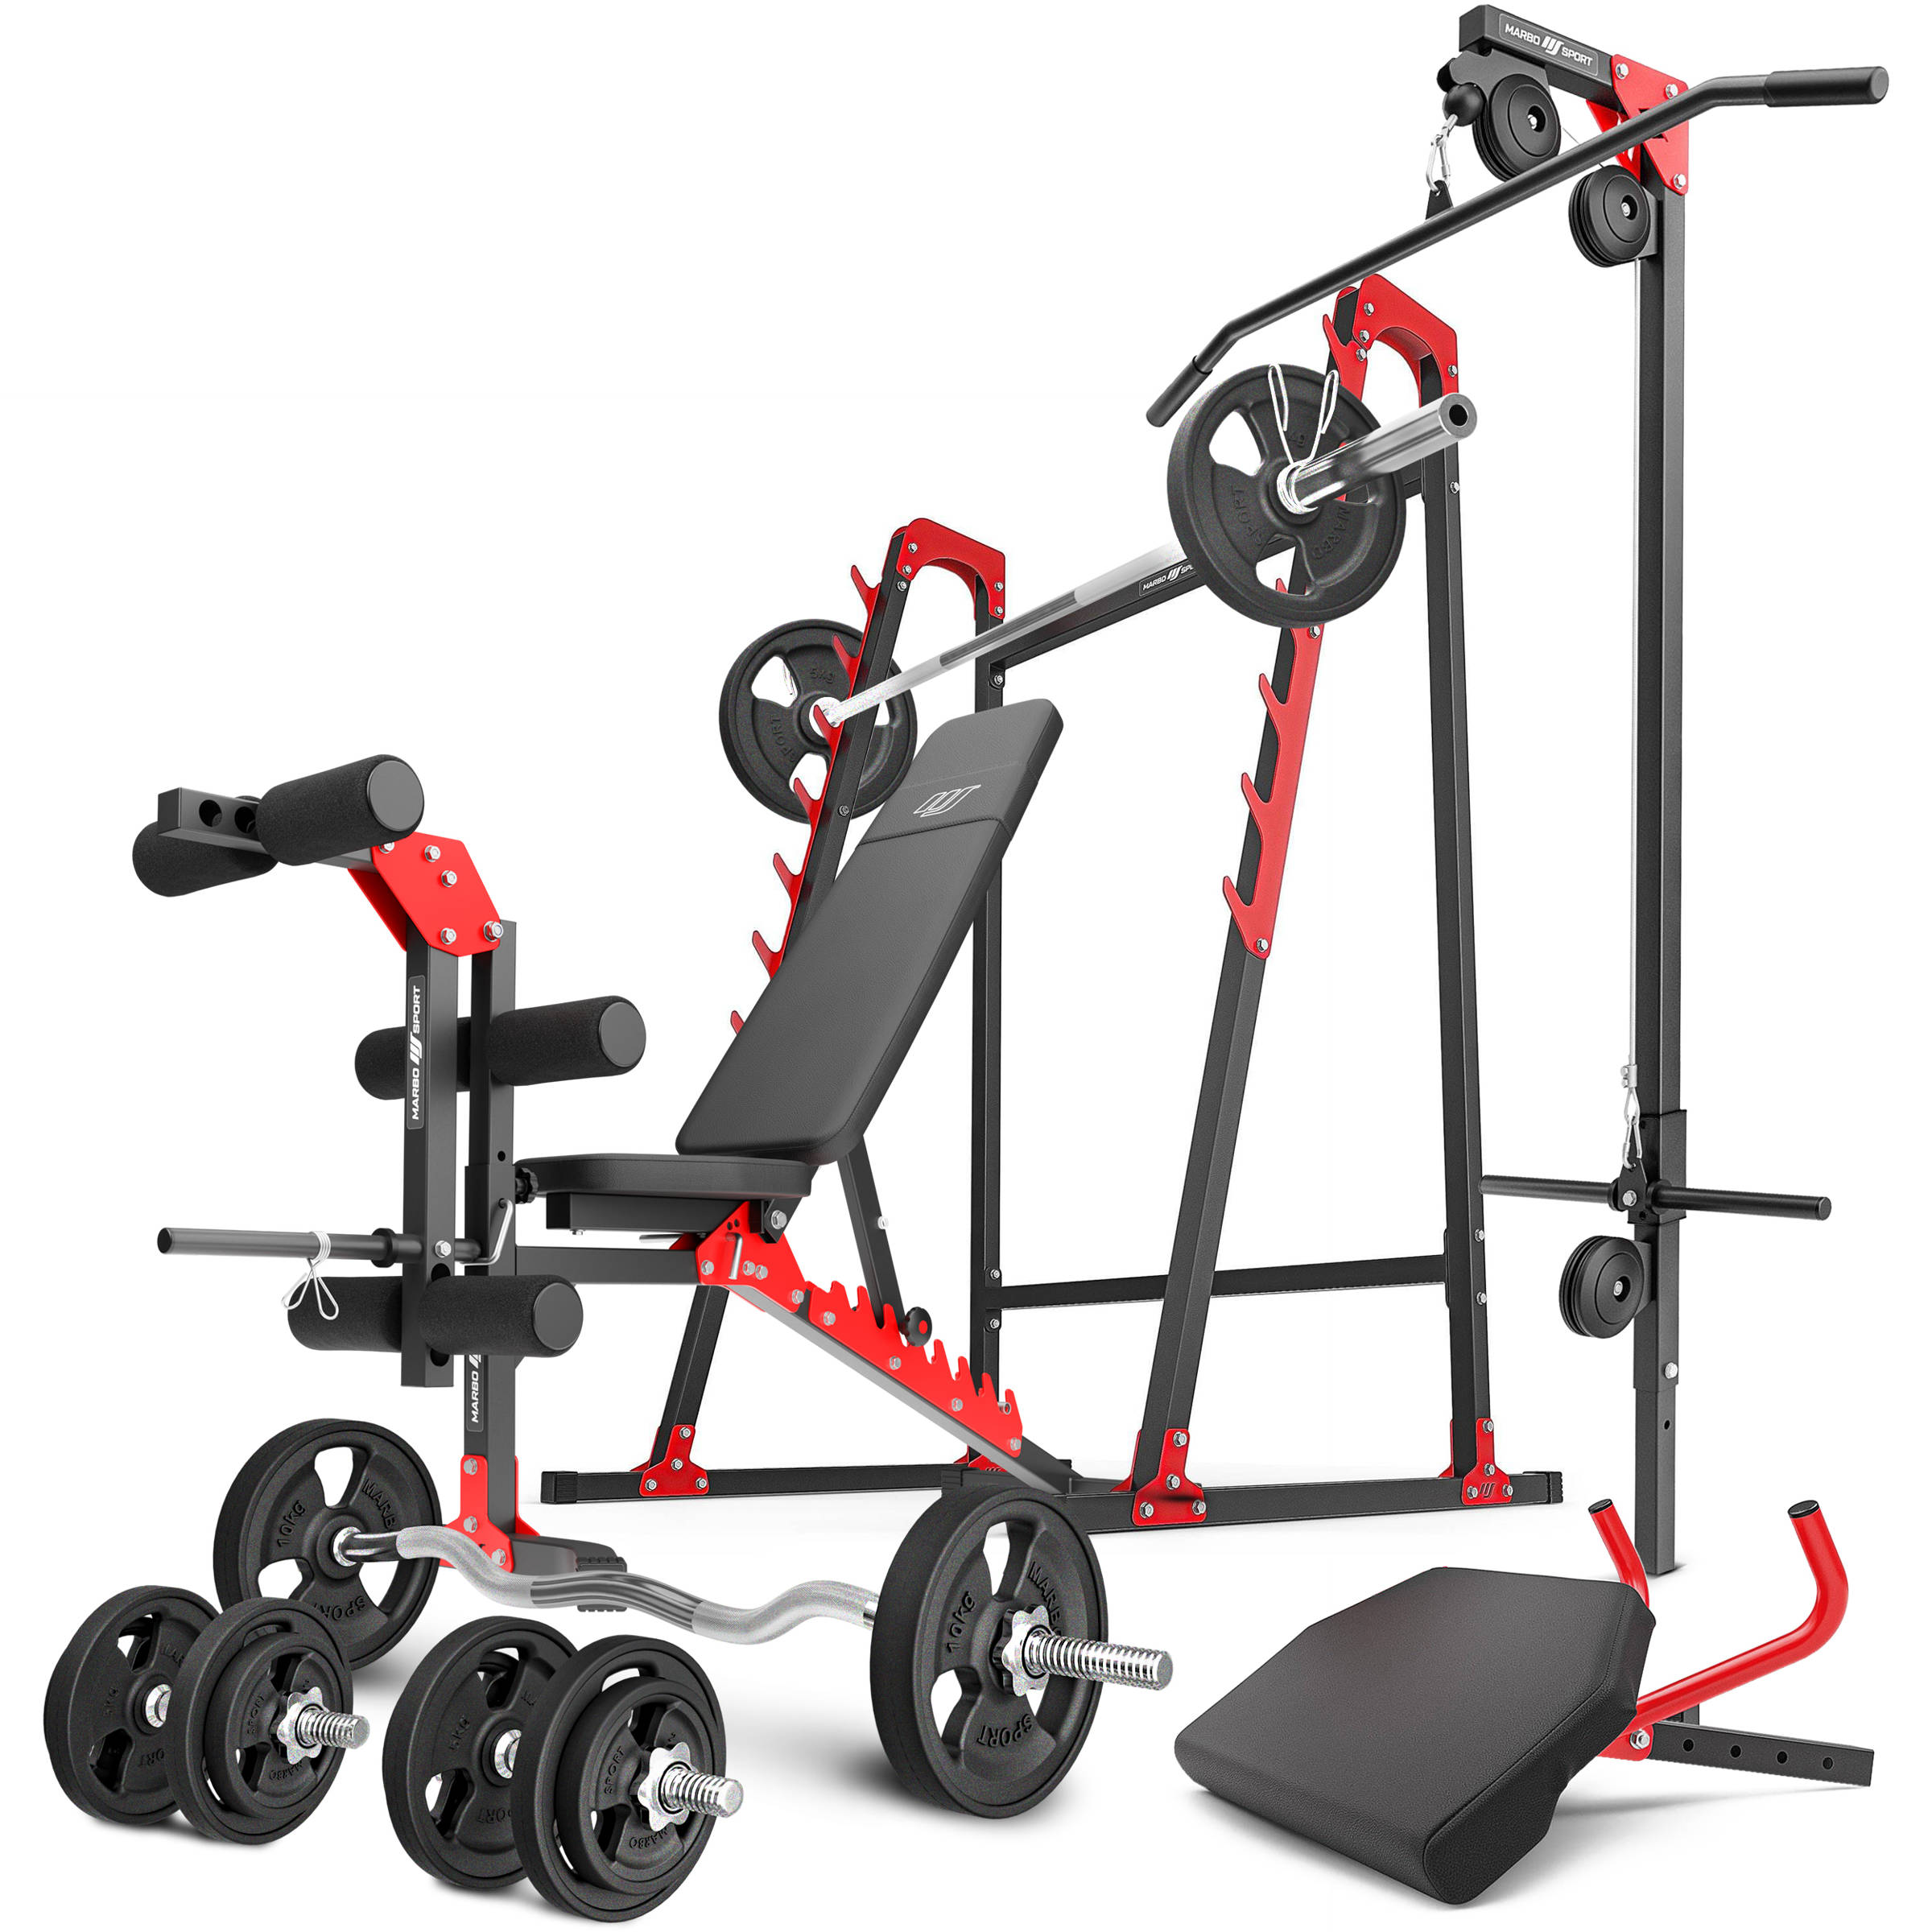 K-sport Gmbh Kit d'entraînement: banc de musculation + curler pour les  jambes - KSSL104 - Colizey